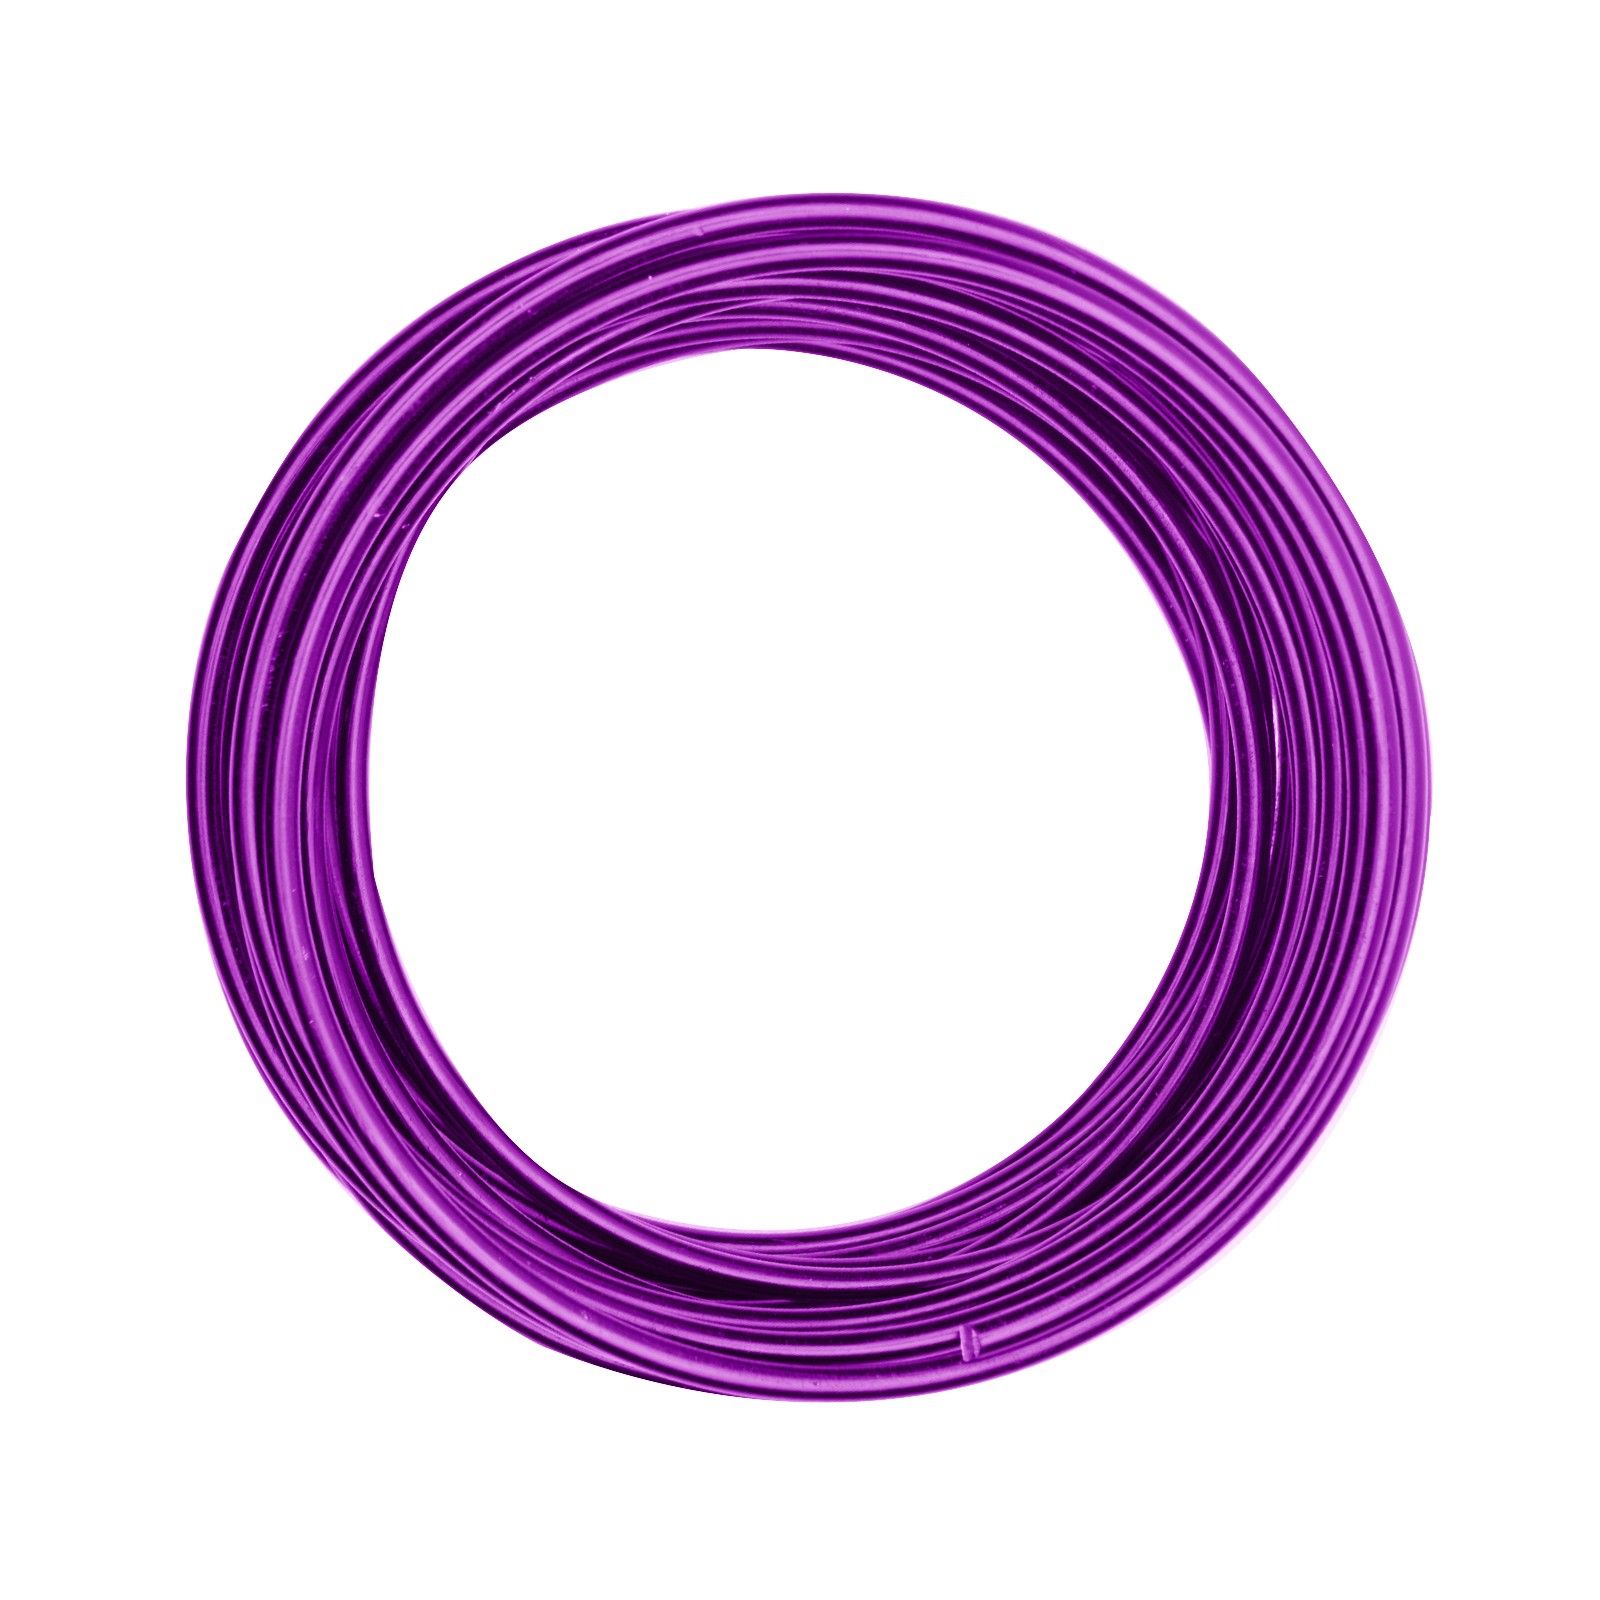 Vaessen Creative • Aluminium wire 4mm 10m Lavender